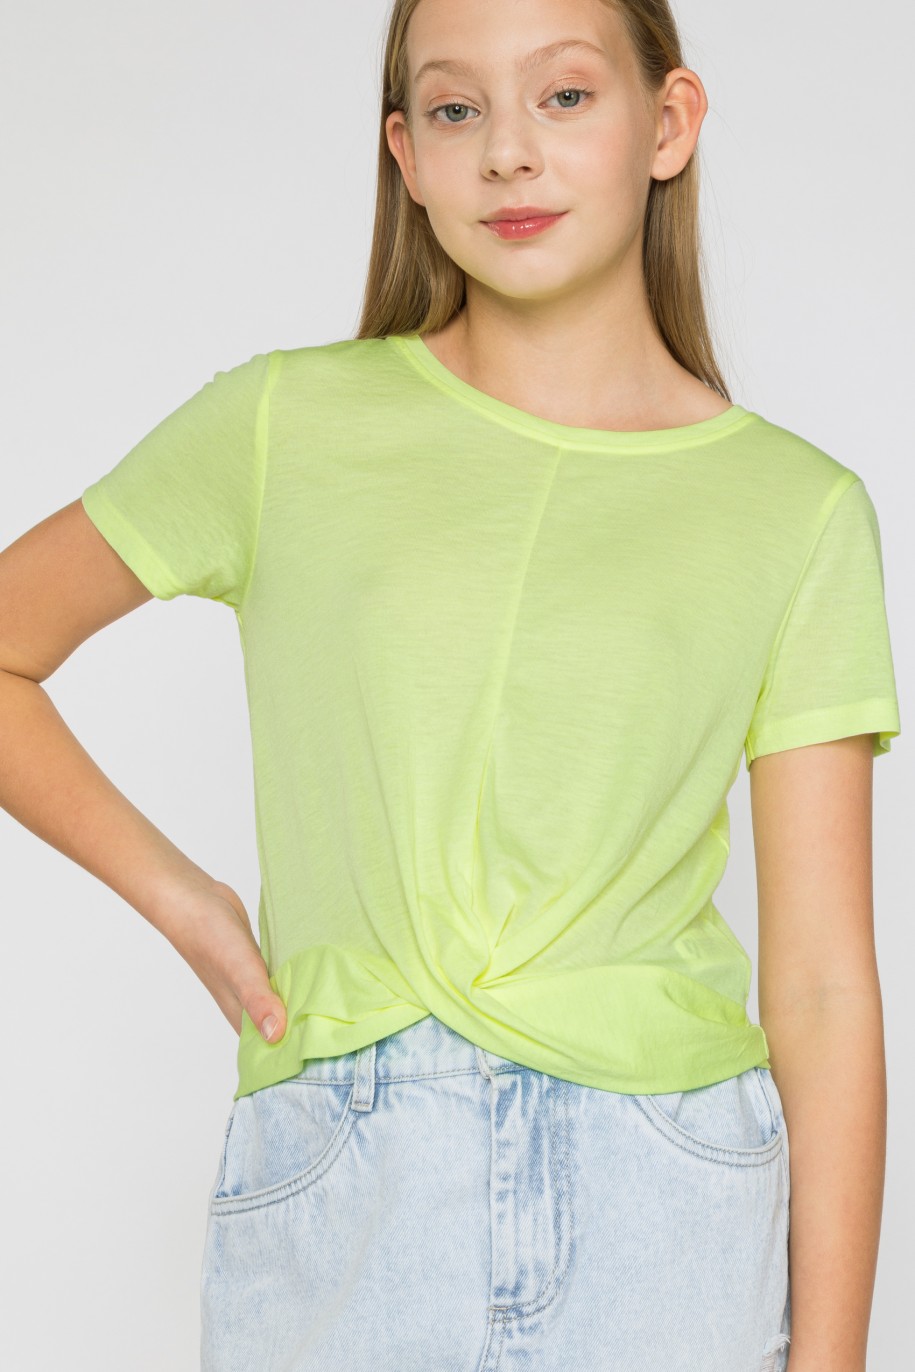 Neonowy t-shirt dla dziewczyny z marszczonym dołem - 33257